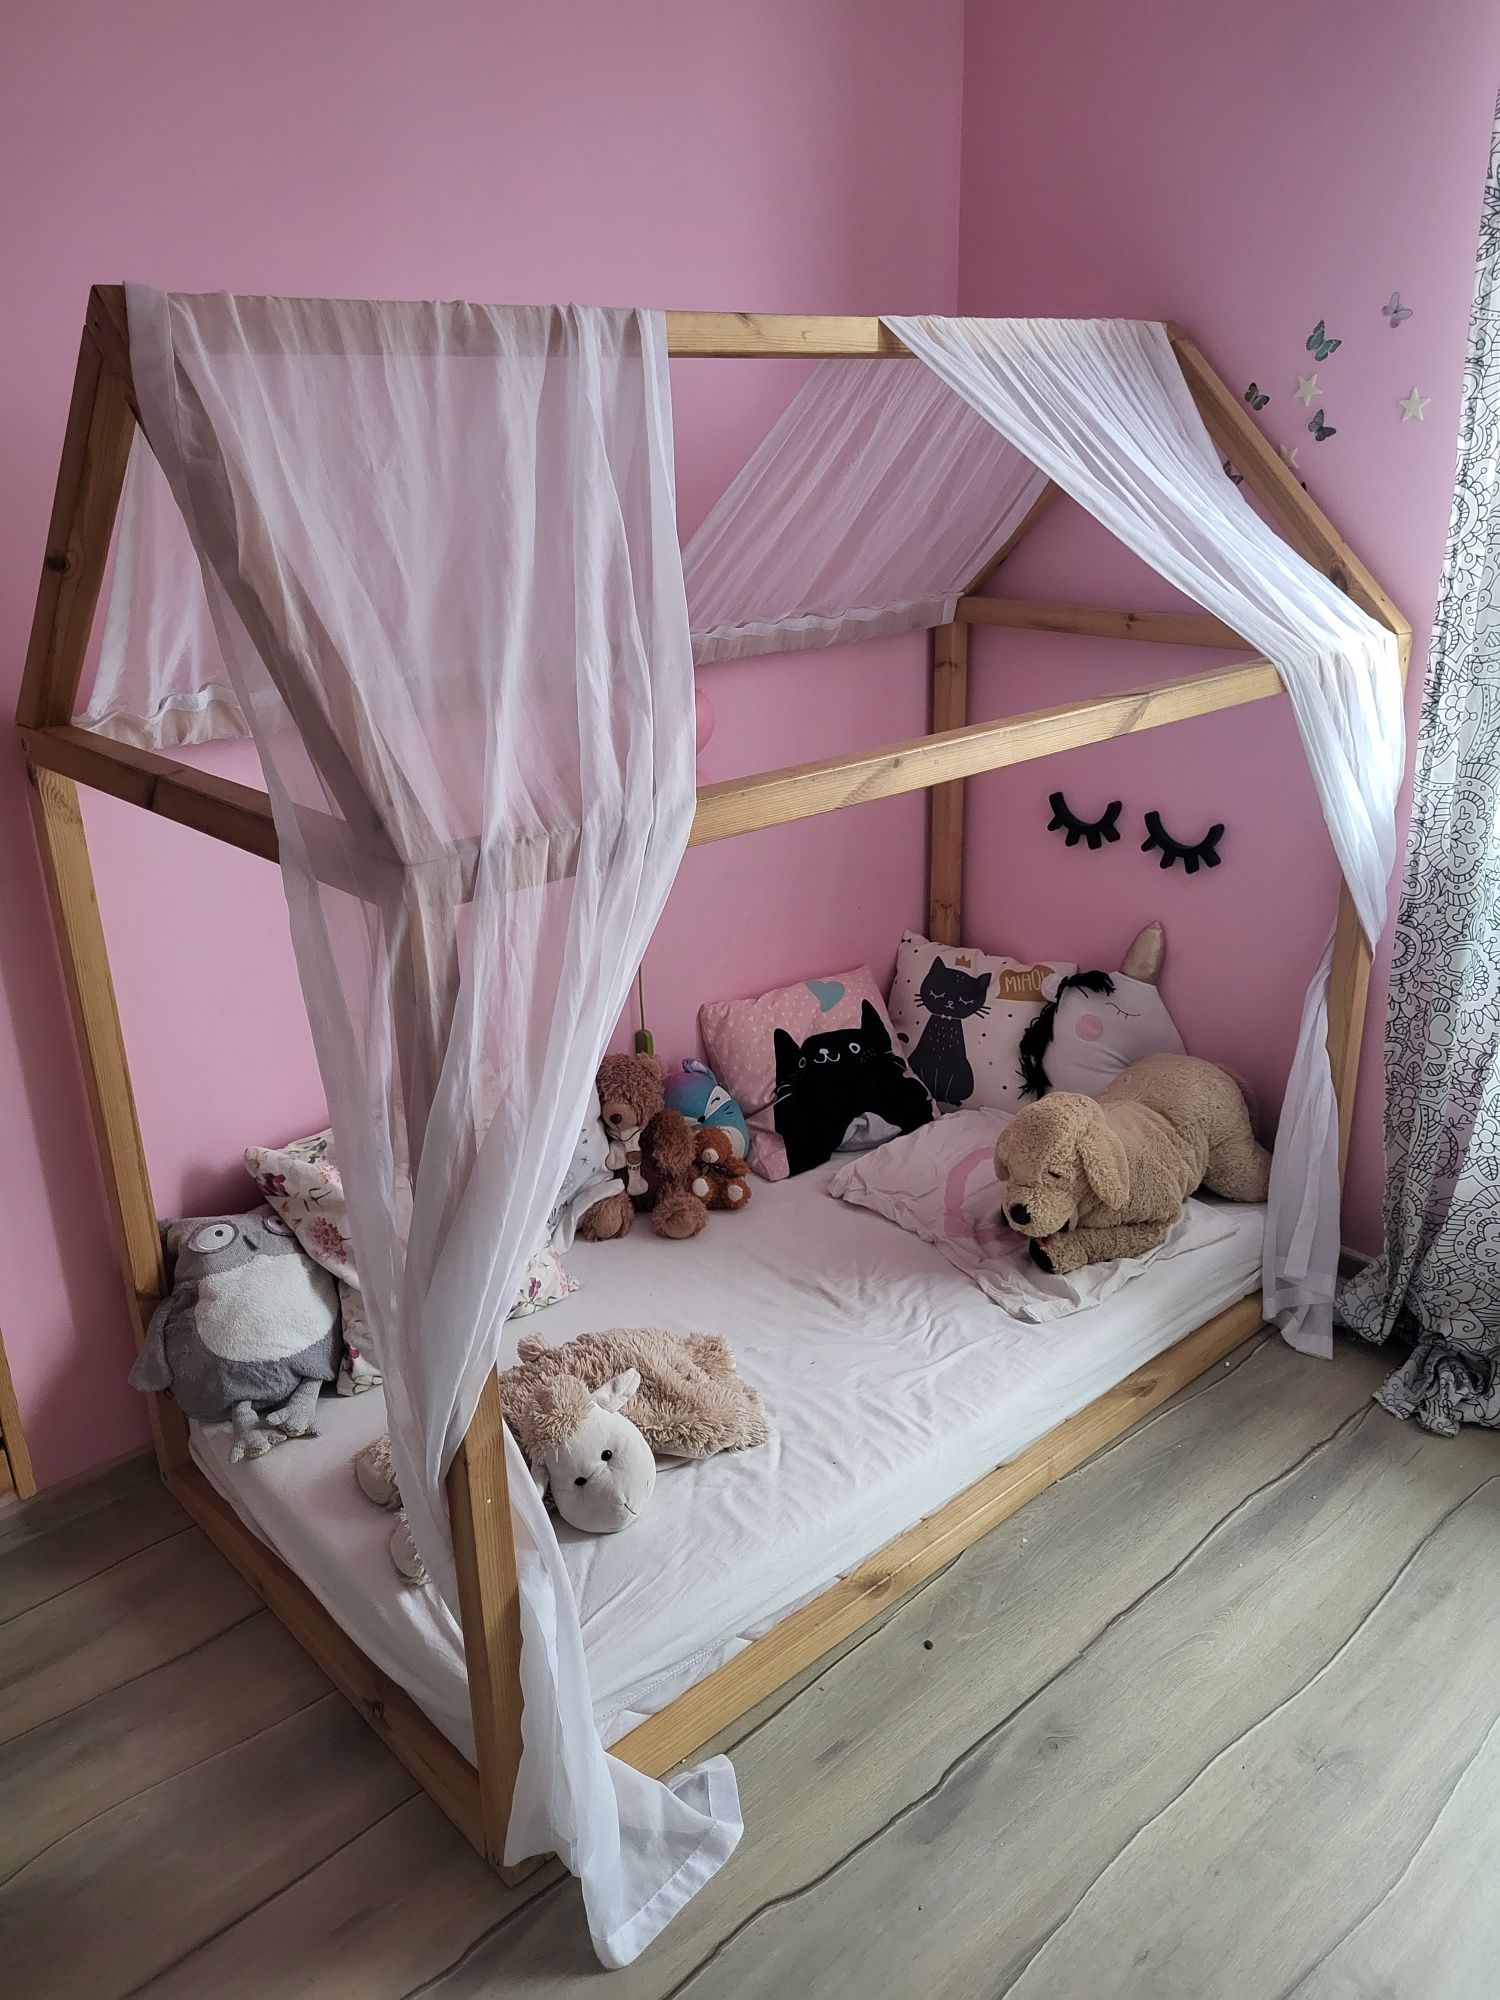 Drewniane łóżko domek, materac